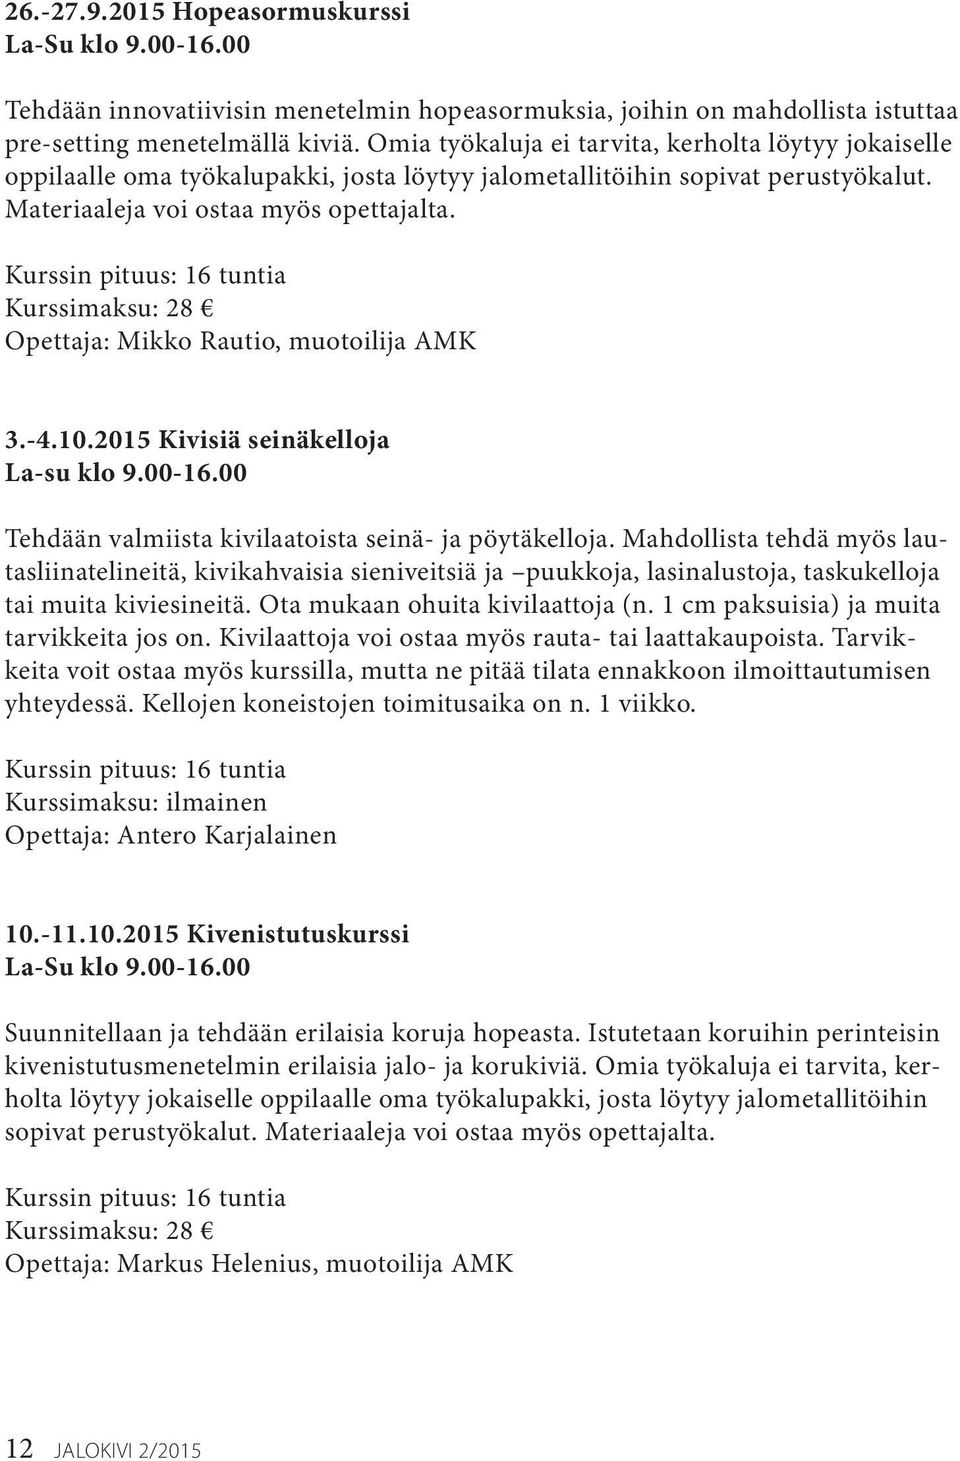 Kurssimaksu: 28 Opettaja: Mikko Rautio, muotoilija AMK 3.-4.10.2015 Kivisiä seinäkelloja La-su klo 9.00-16.00 Tehdään valmiista kivilaatoista seinä- ja pöytäkelloja.